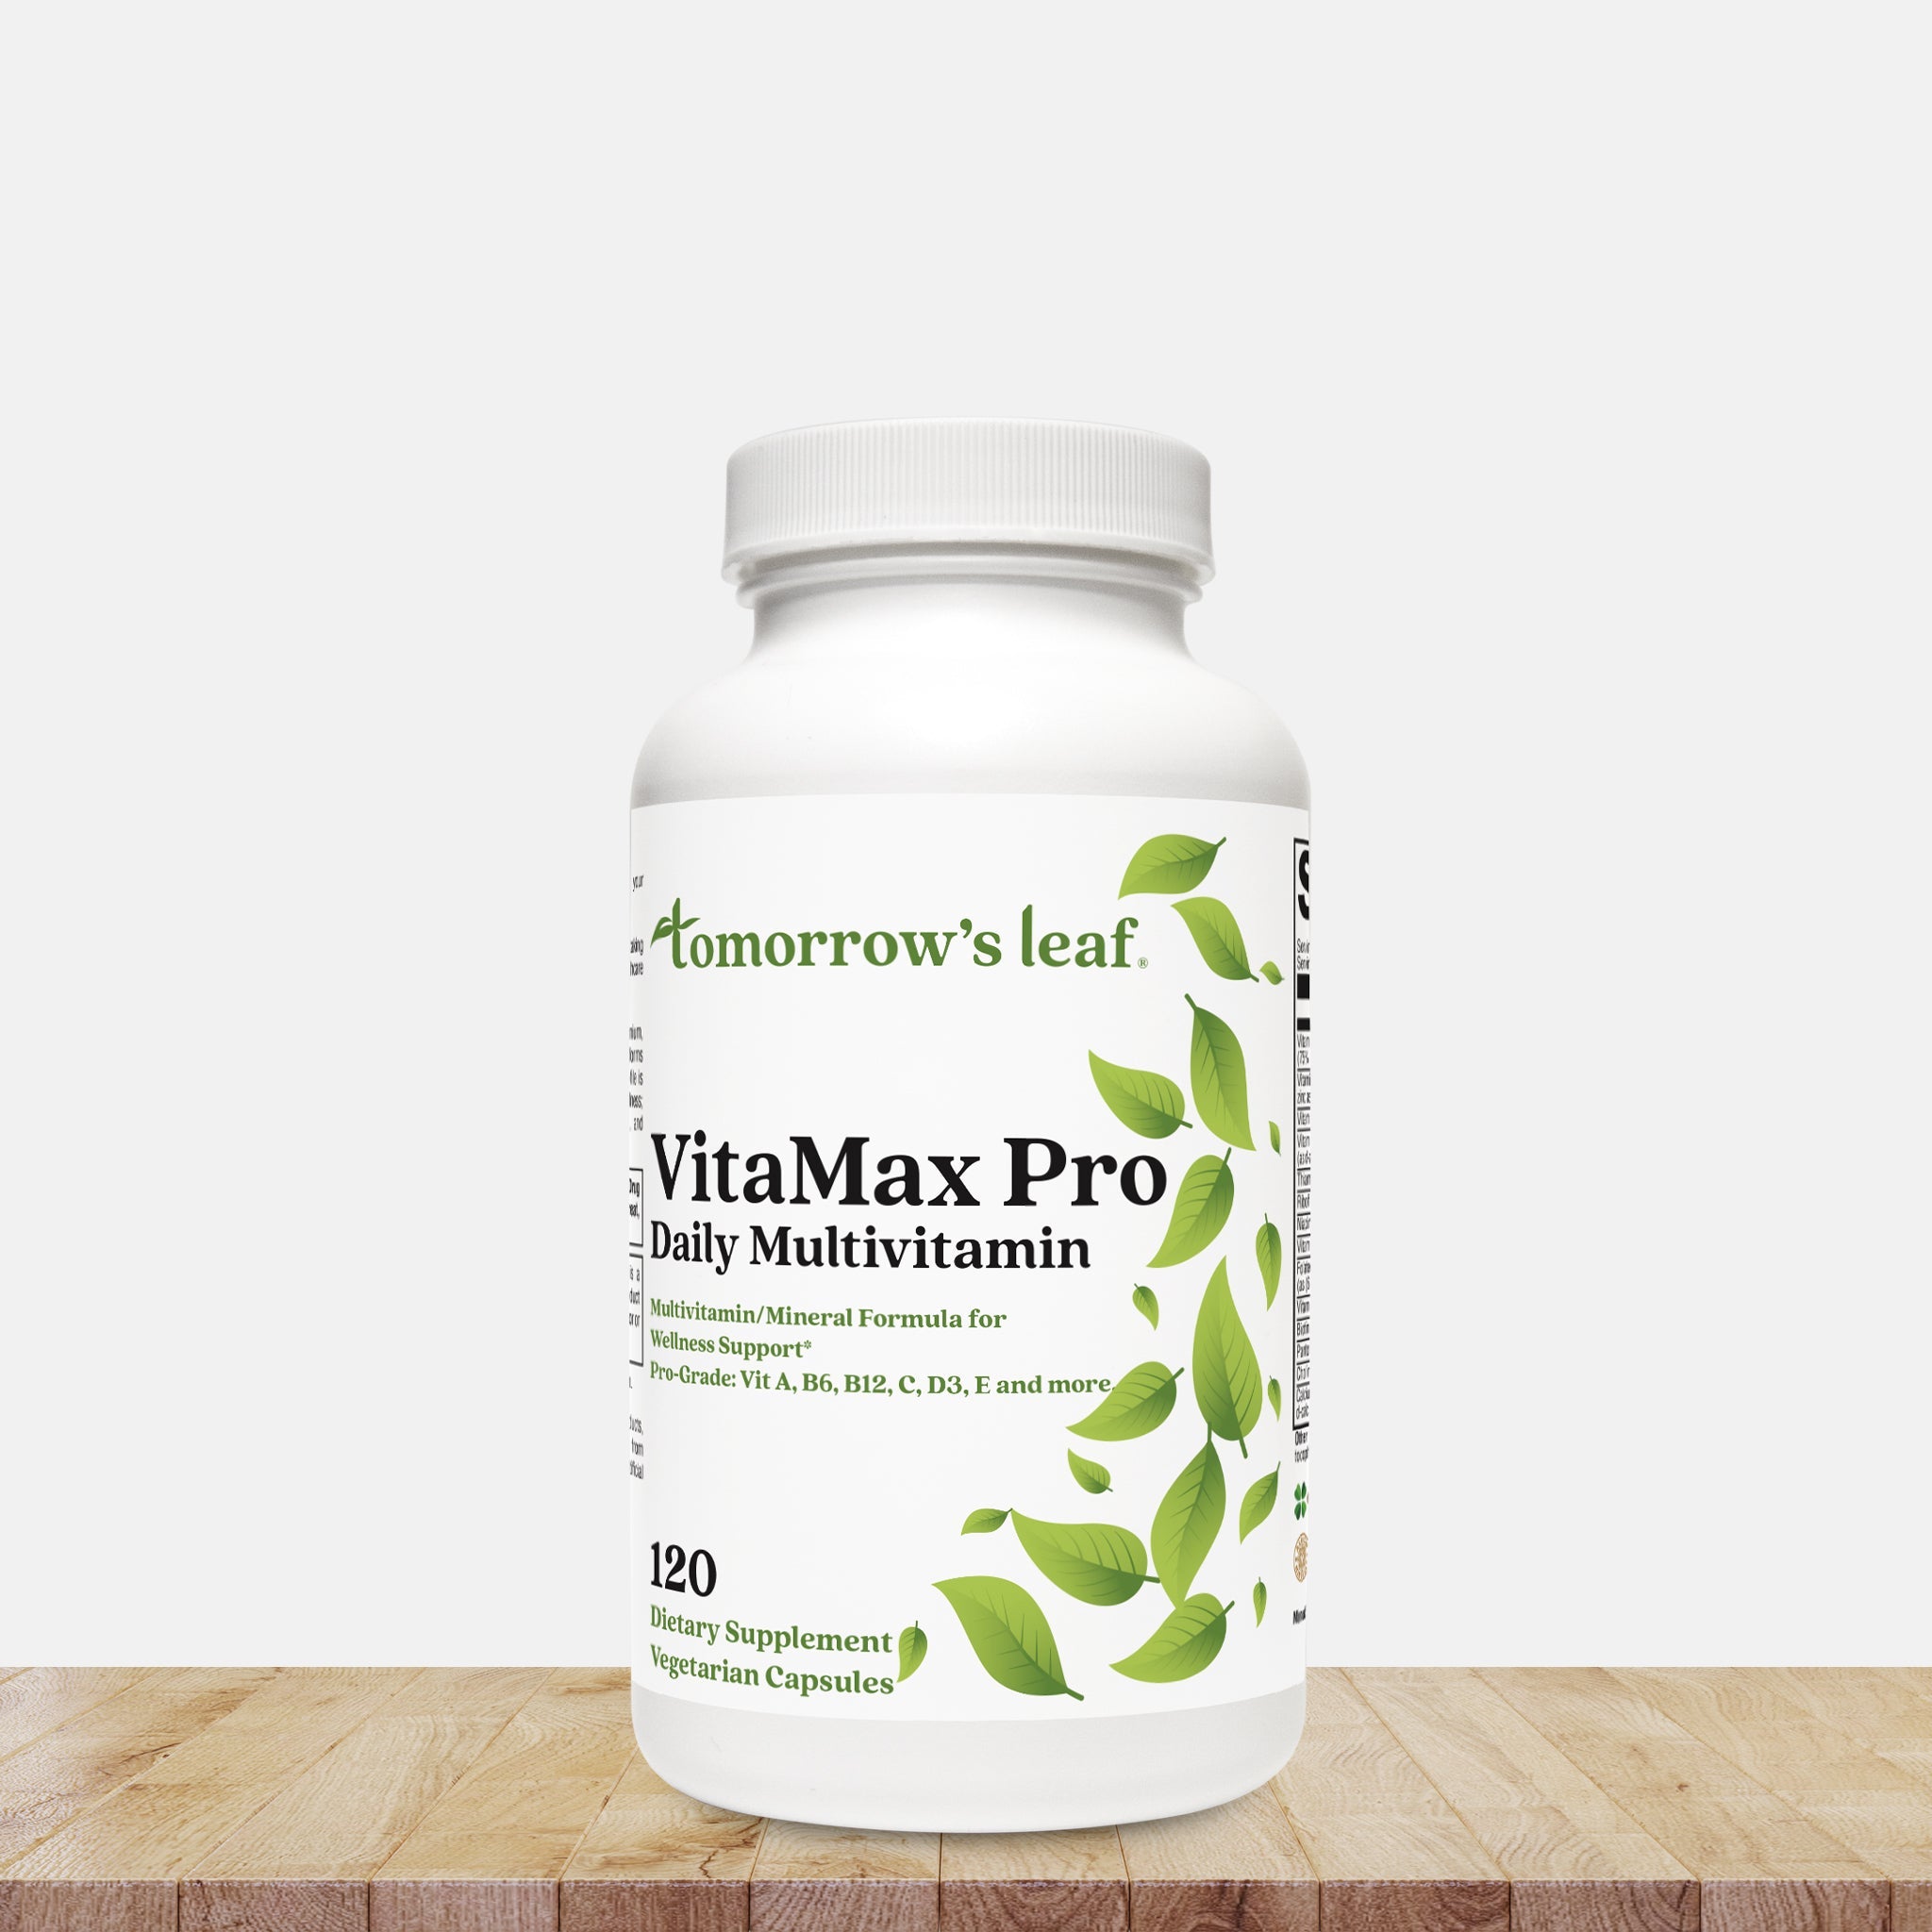 VitaMax Pro Daily Multivitamin